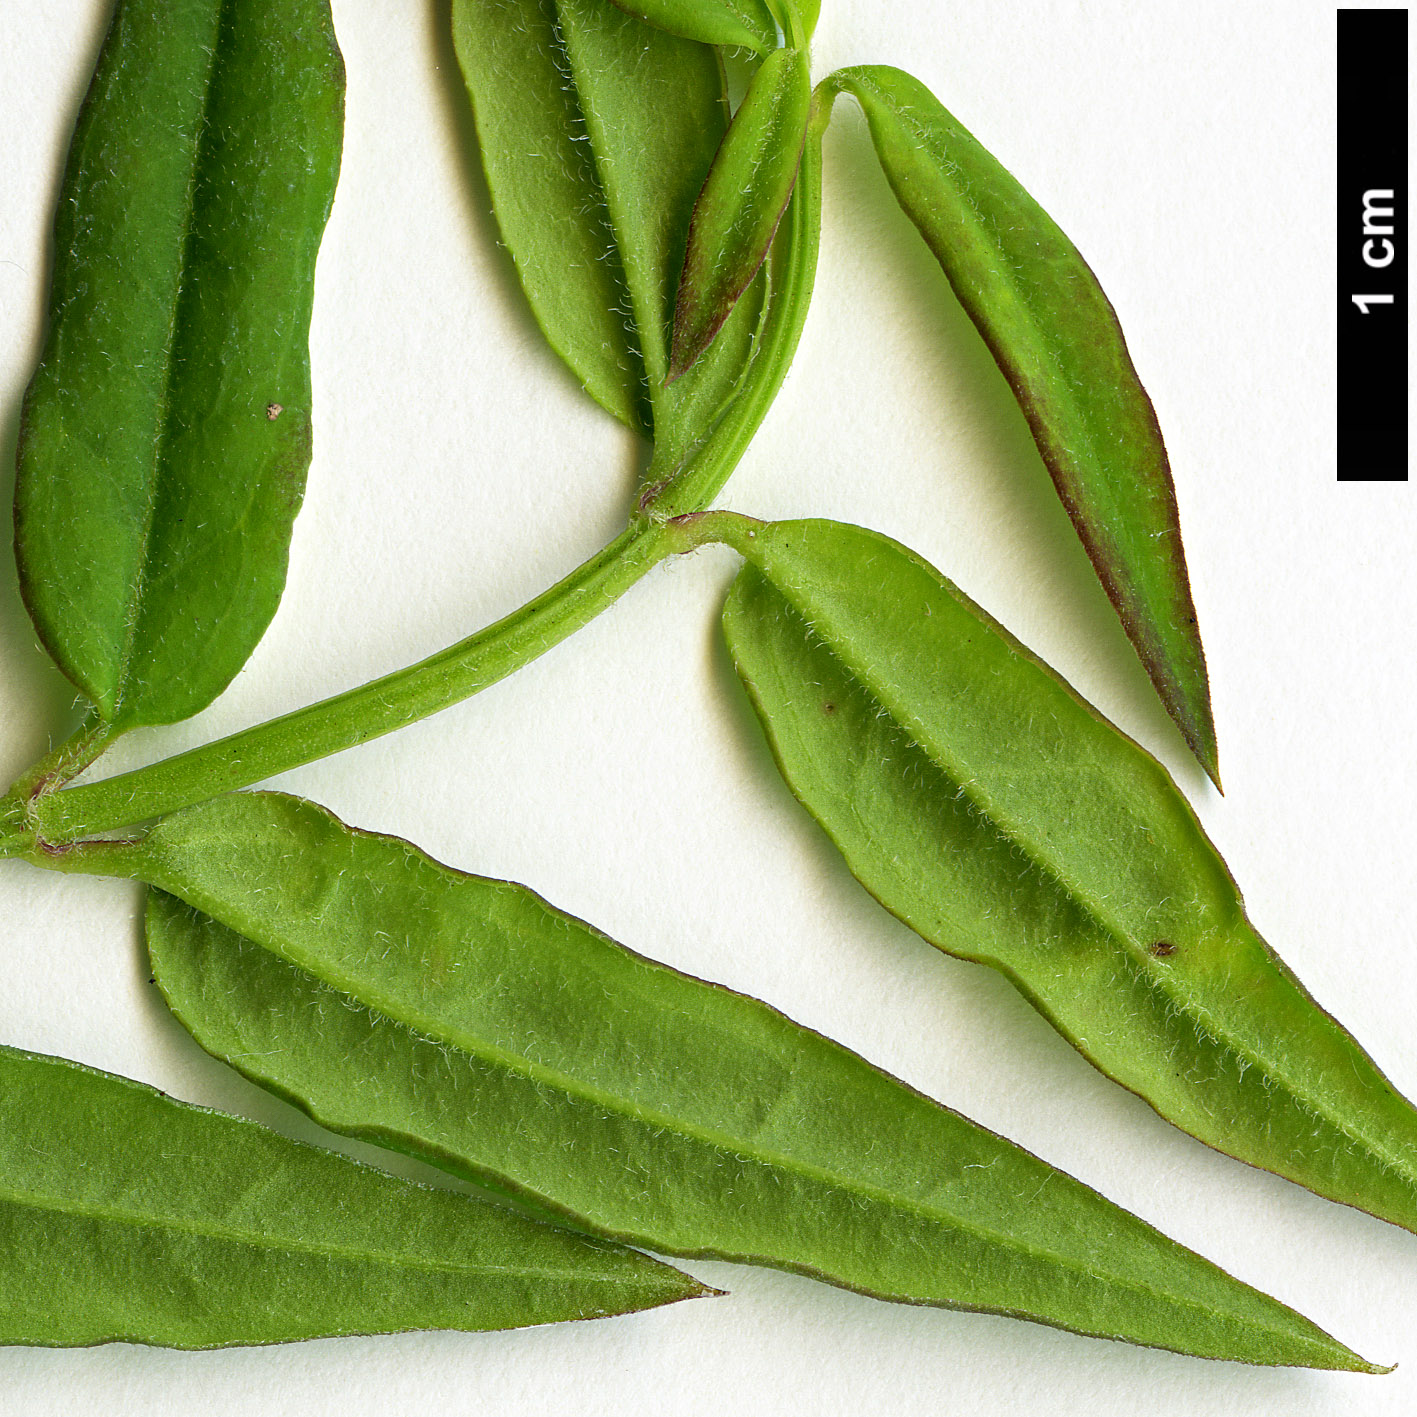 High resolution image: Family: Oleaceae - Genus: Jasminum - Taxon: beesianum